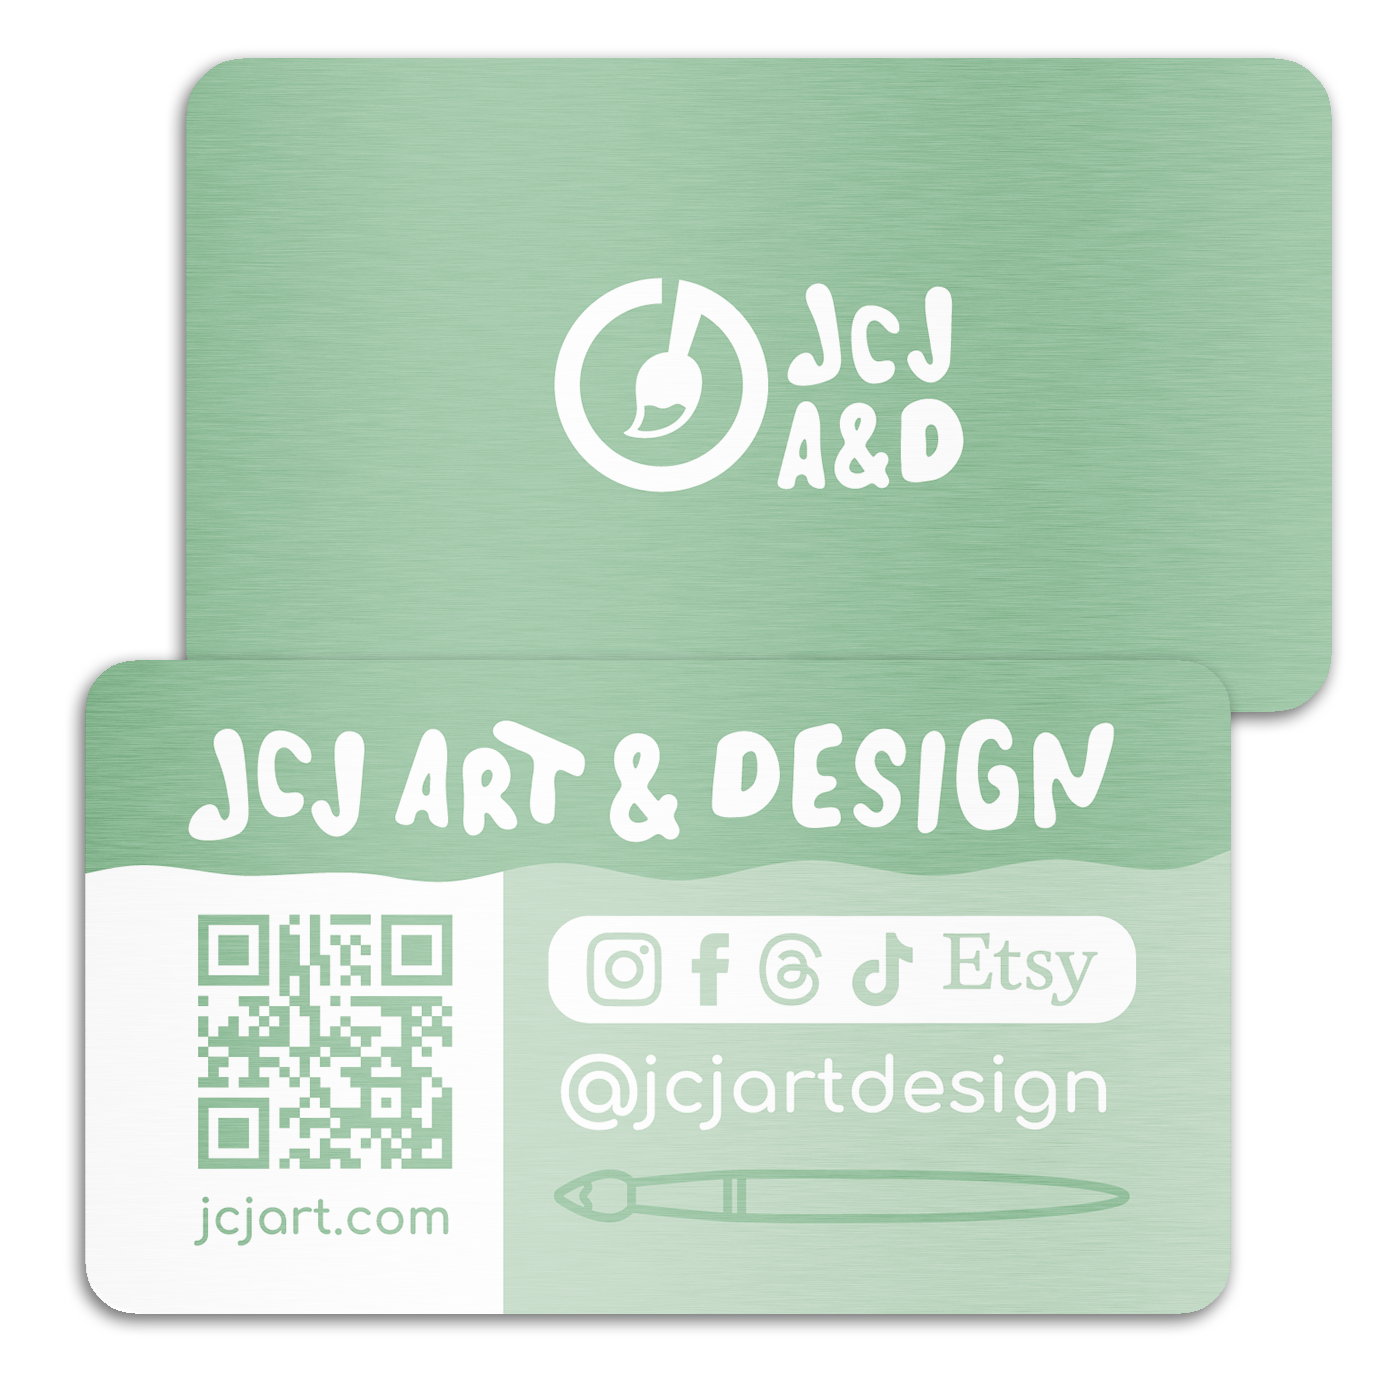 JCJA&D Business Card